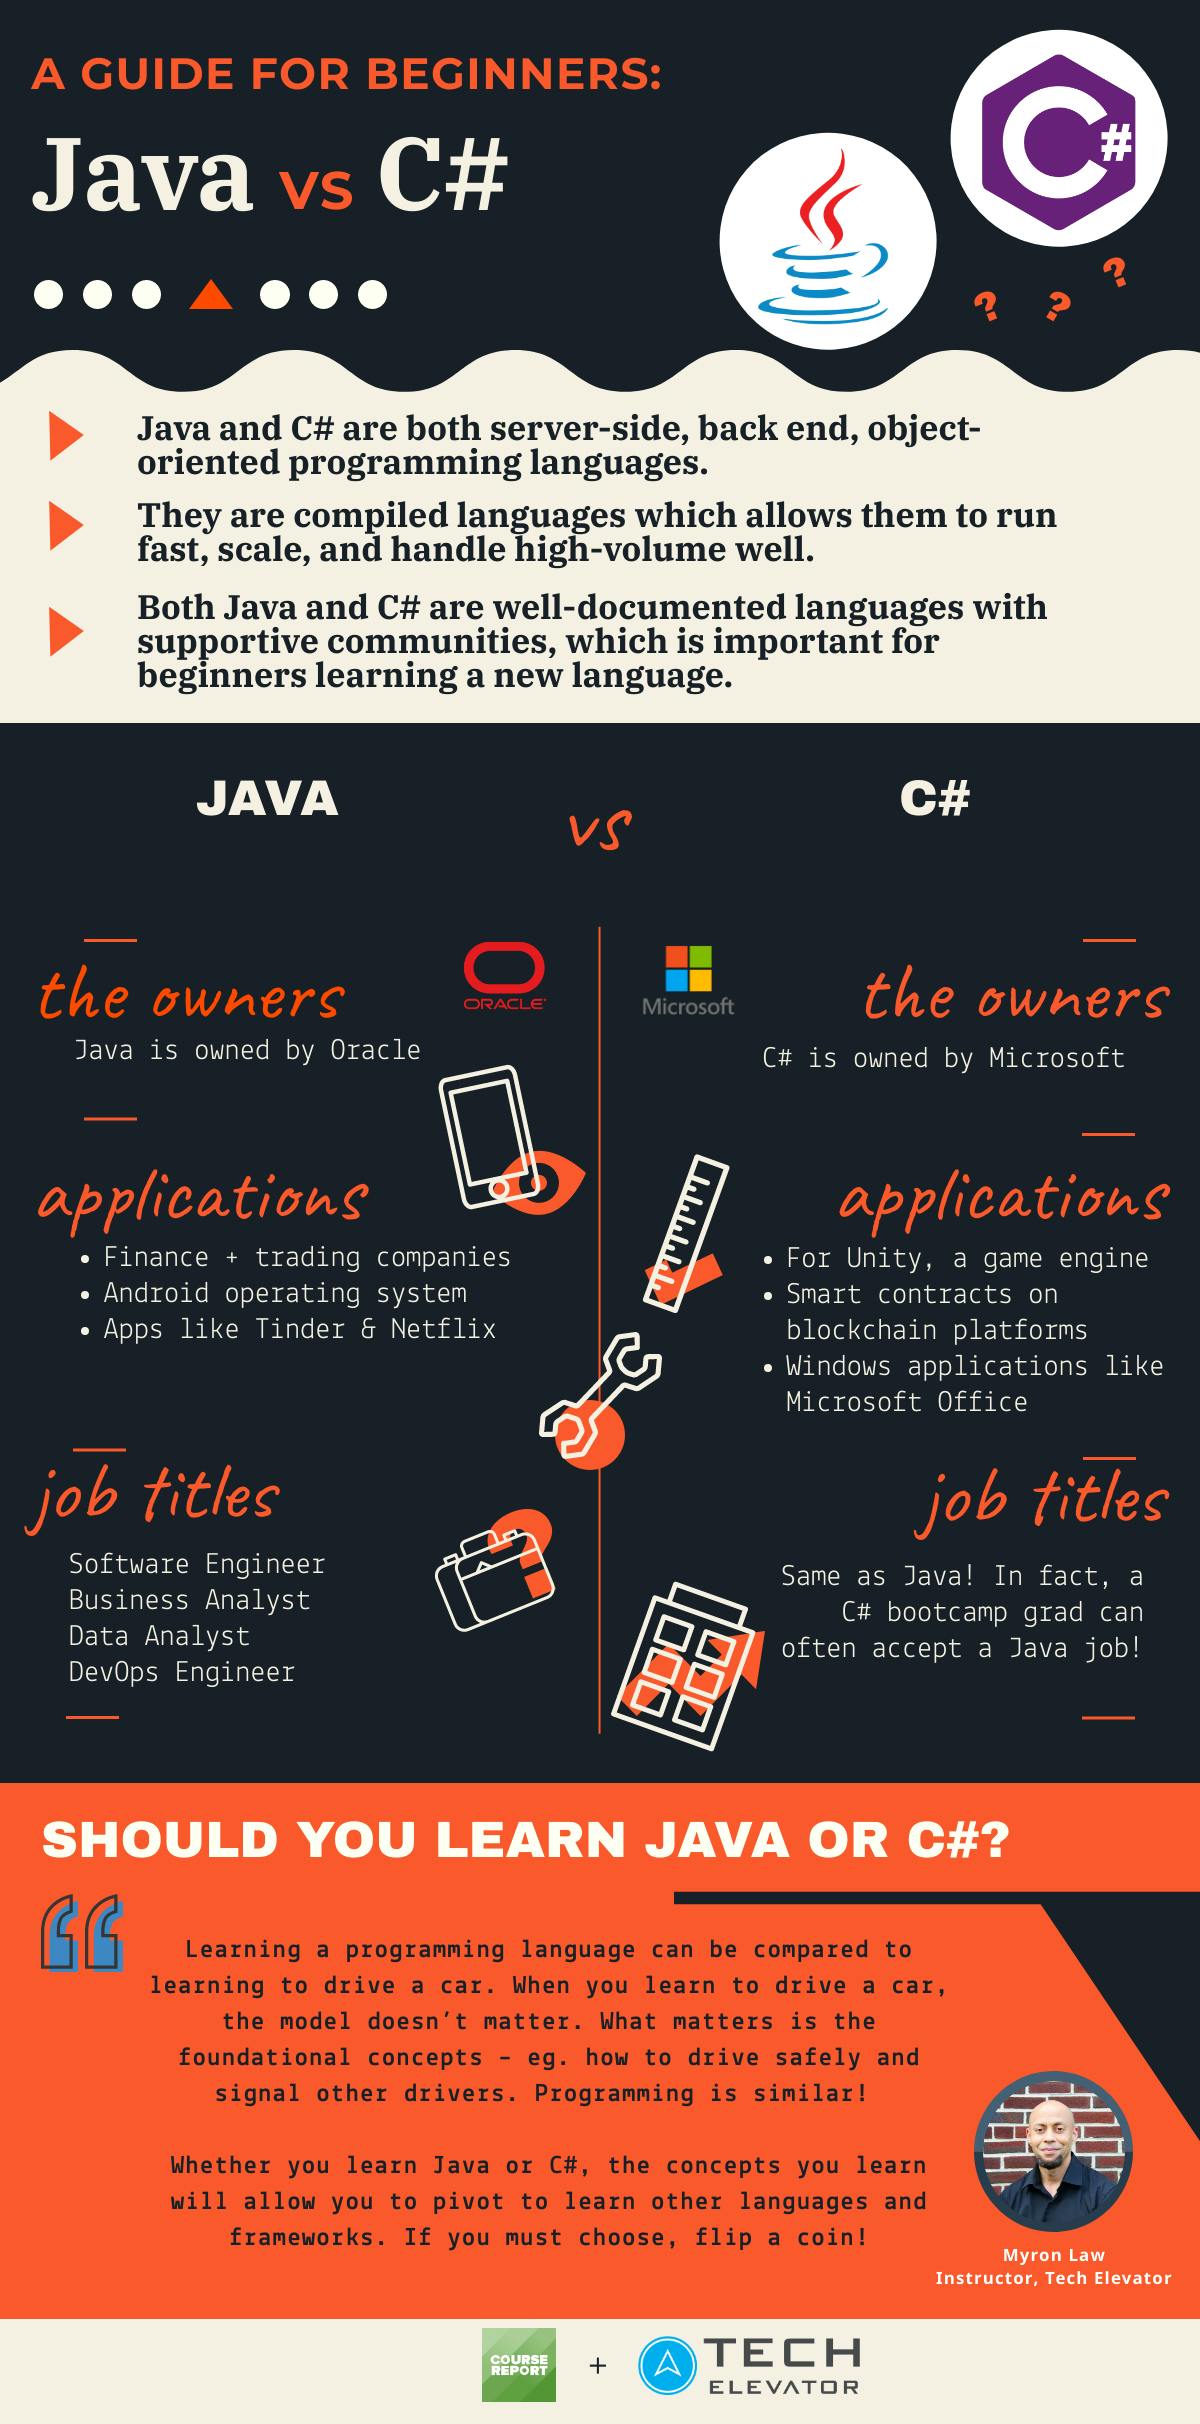 Is C# like Java?